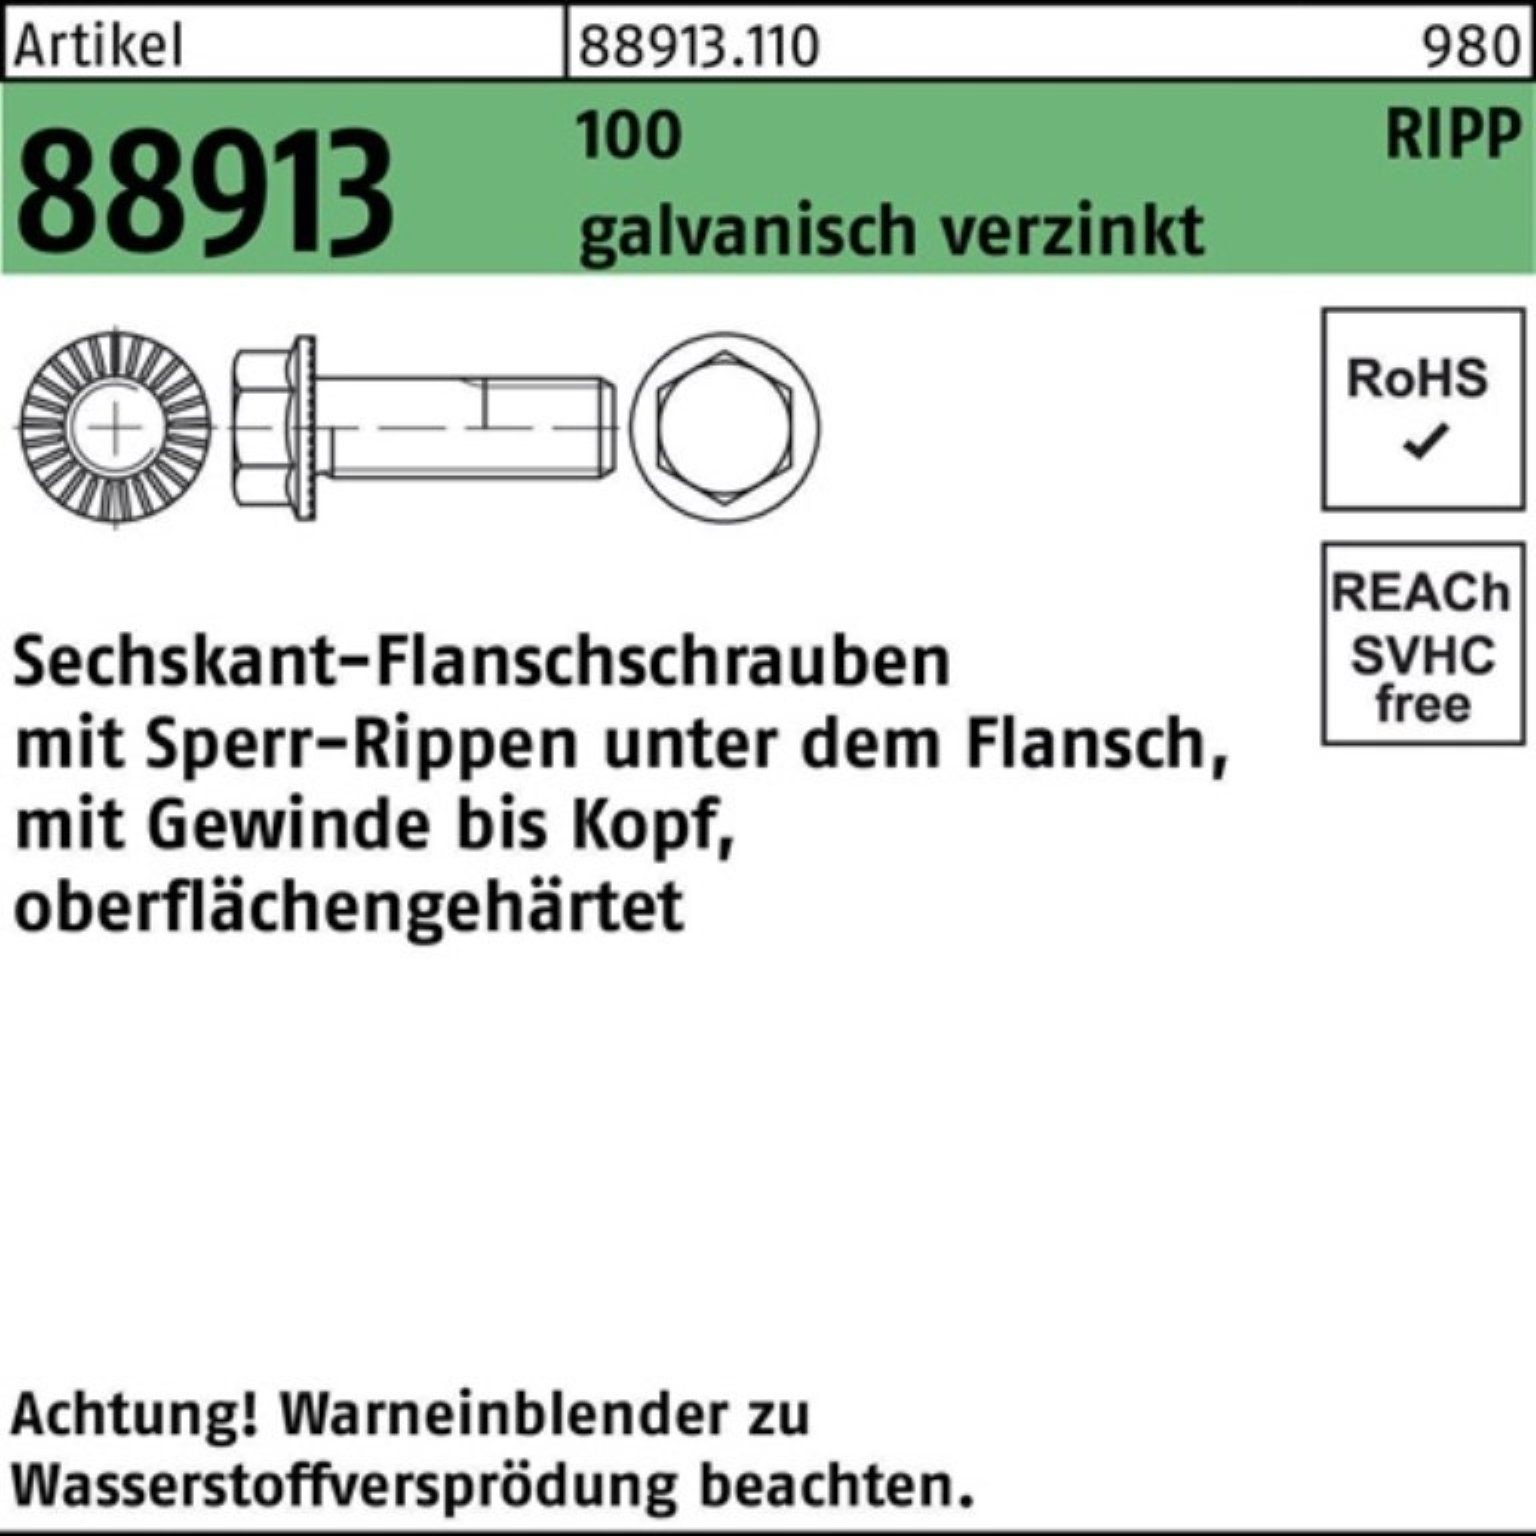 VG Sperr-Ripp M12x75 Schraube Reyher Sechskantflanschschraube 88913 100er Pack 100 g R